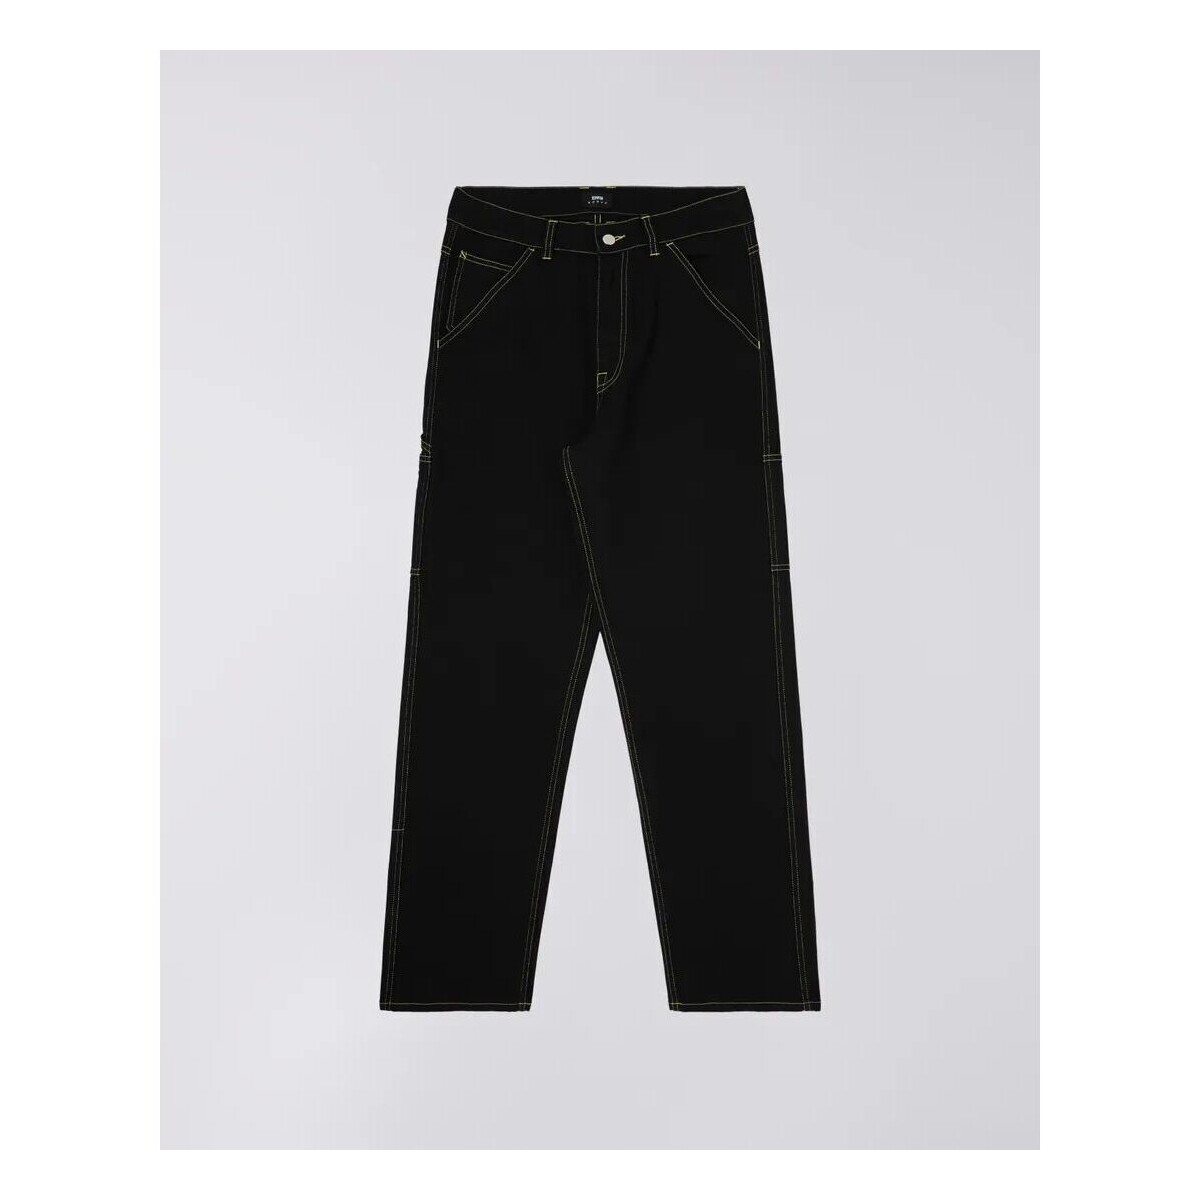 textil Hombre Pantalones Edwin I031838.89.02 OPERATE PANT-BLACK Negro